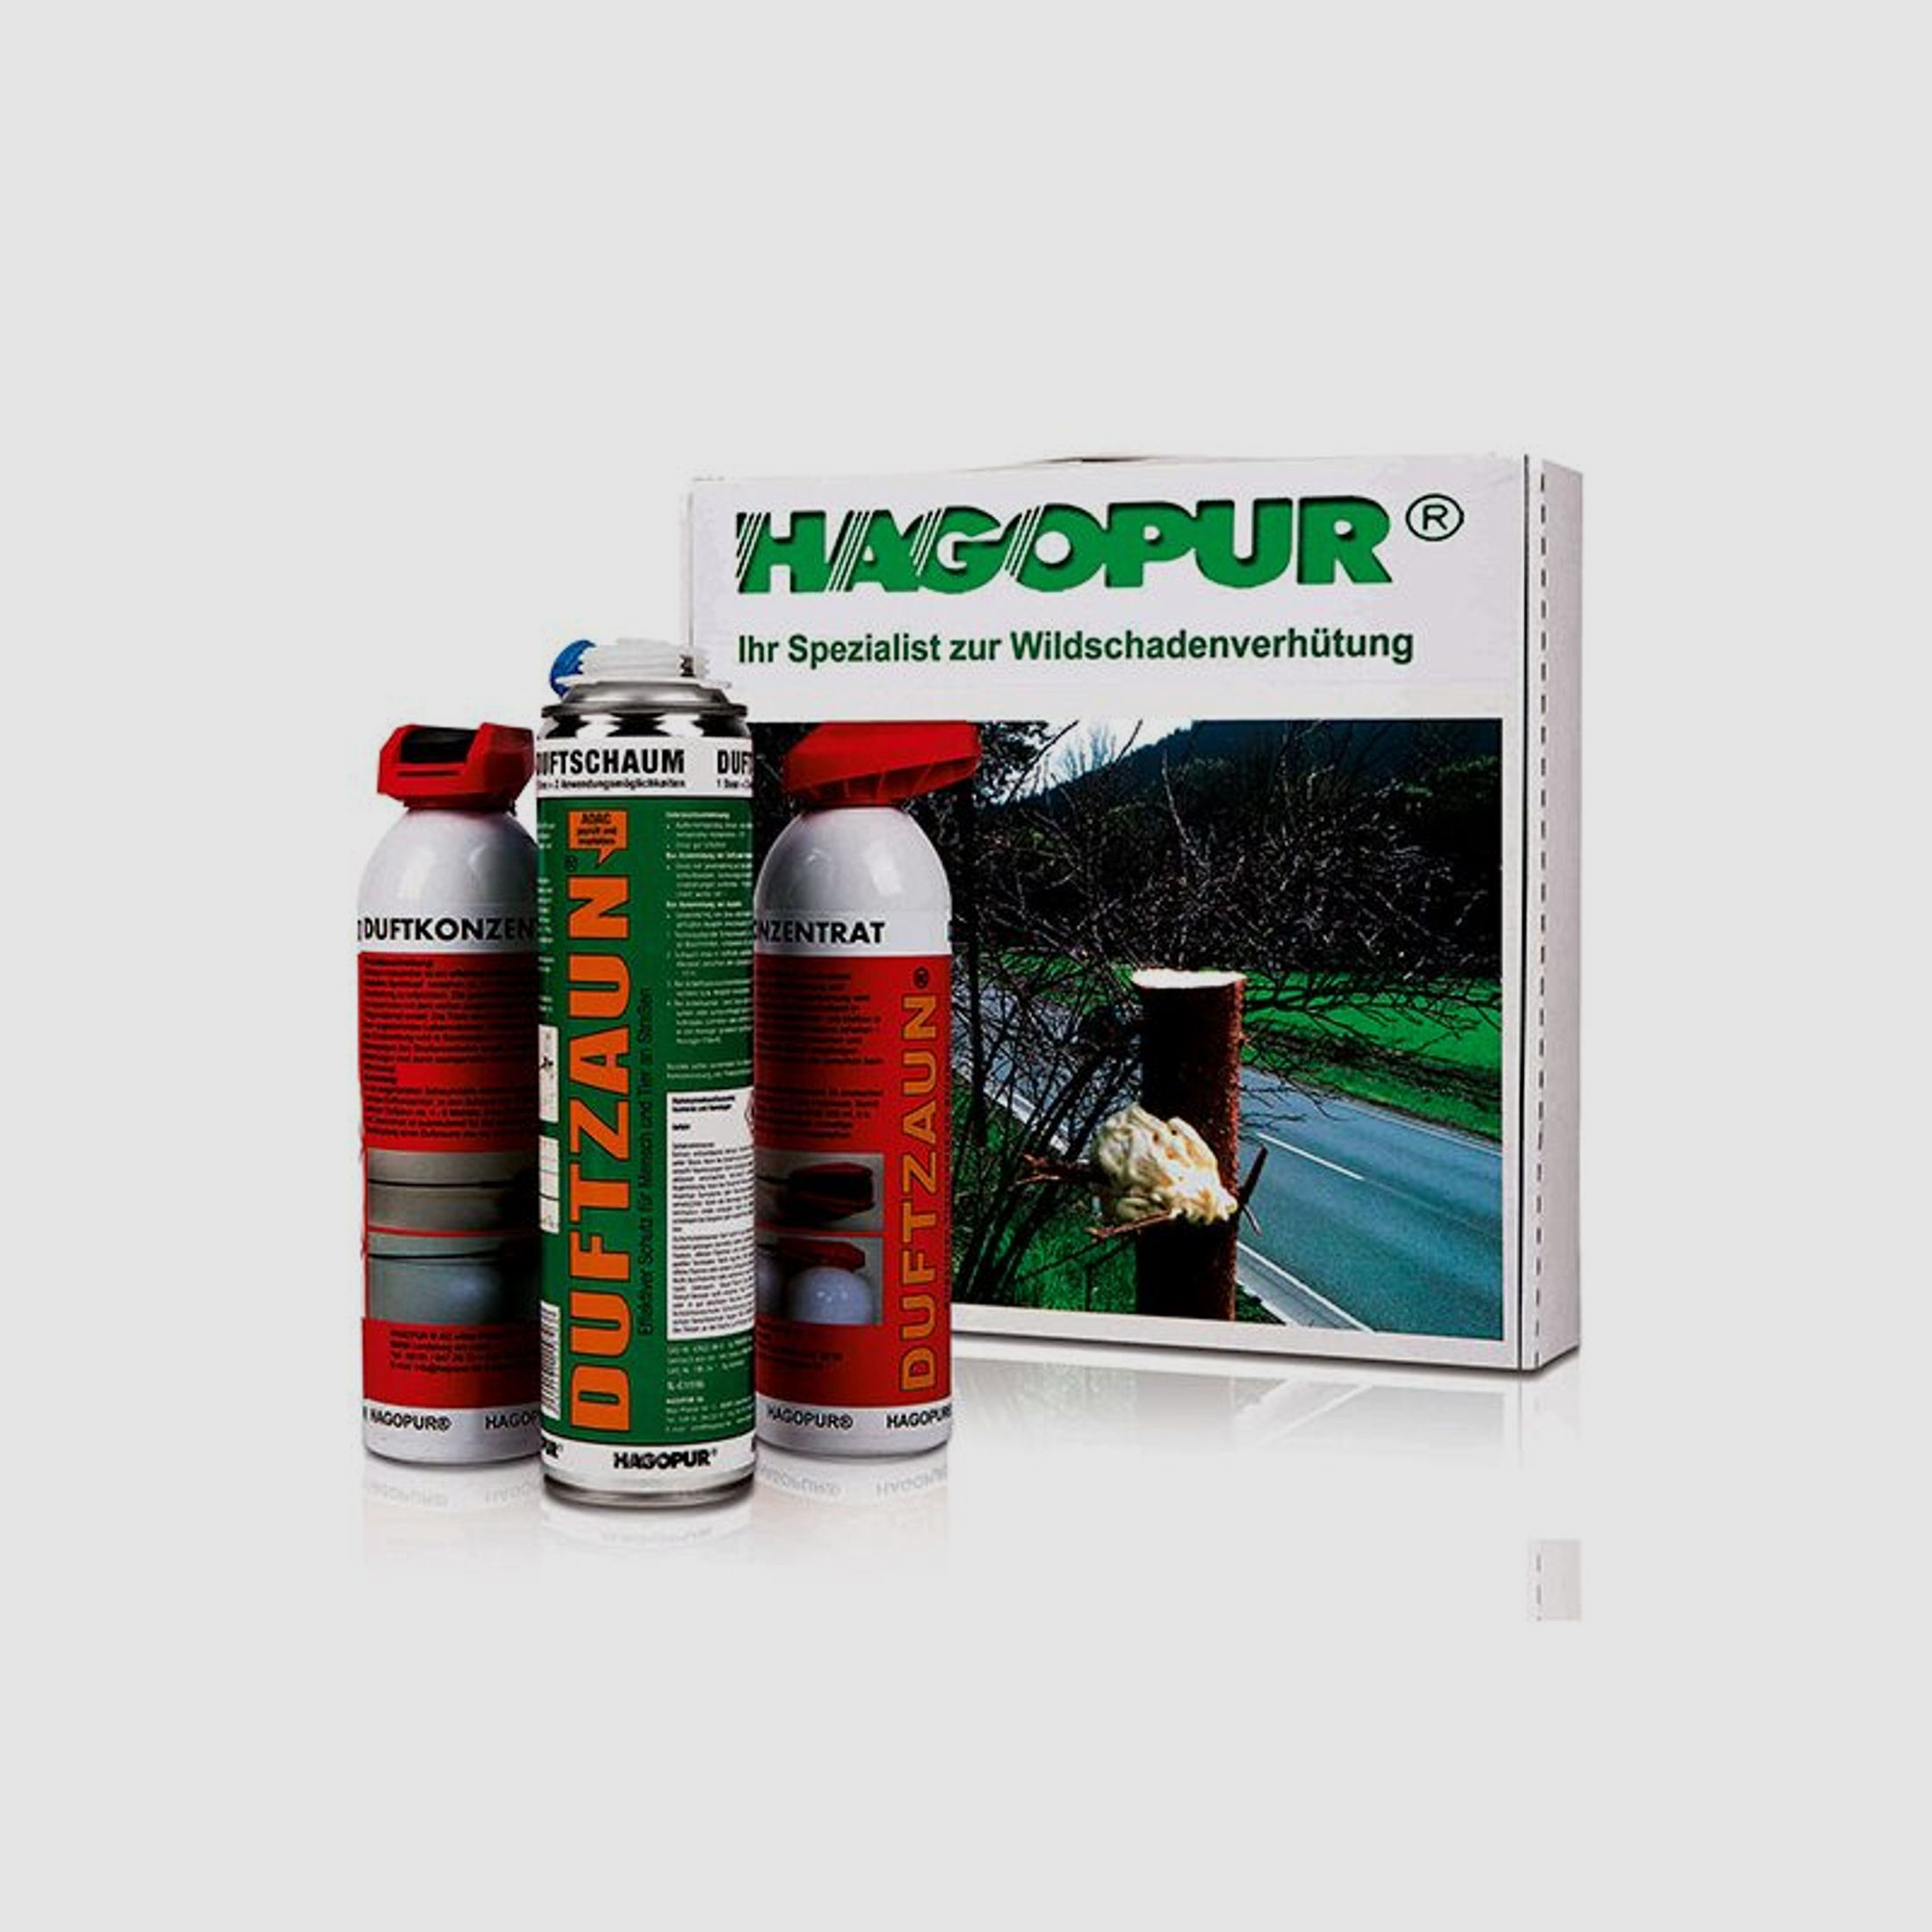 HAGOPUR Duftzaun®-Set Vario